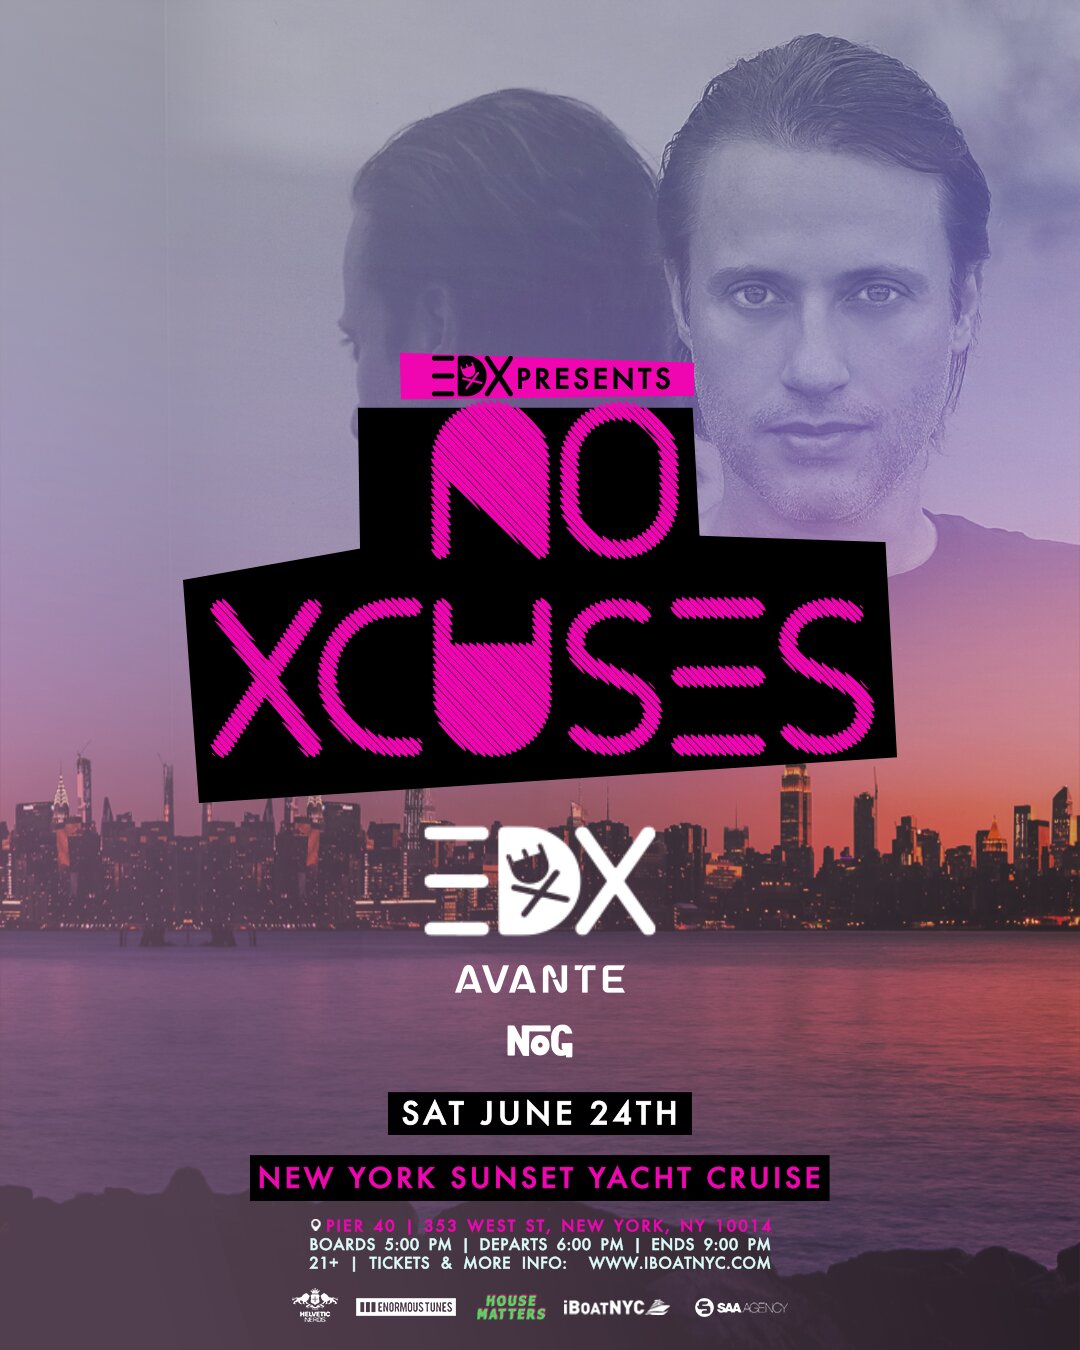 EDX Presents NO XCUSES Sunset Yacht Cruise